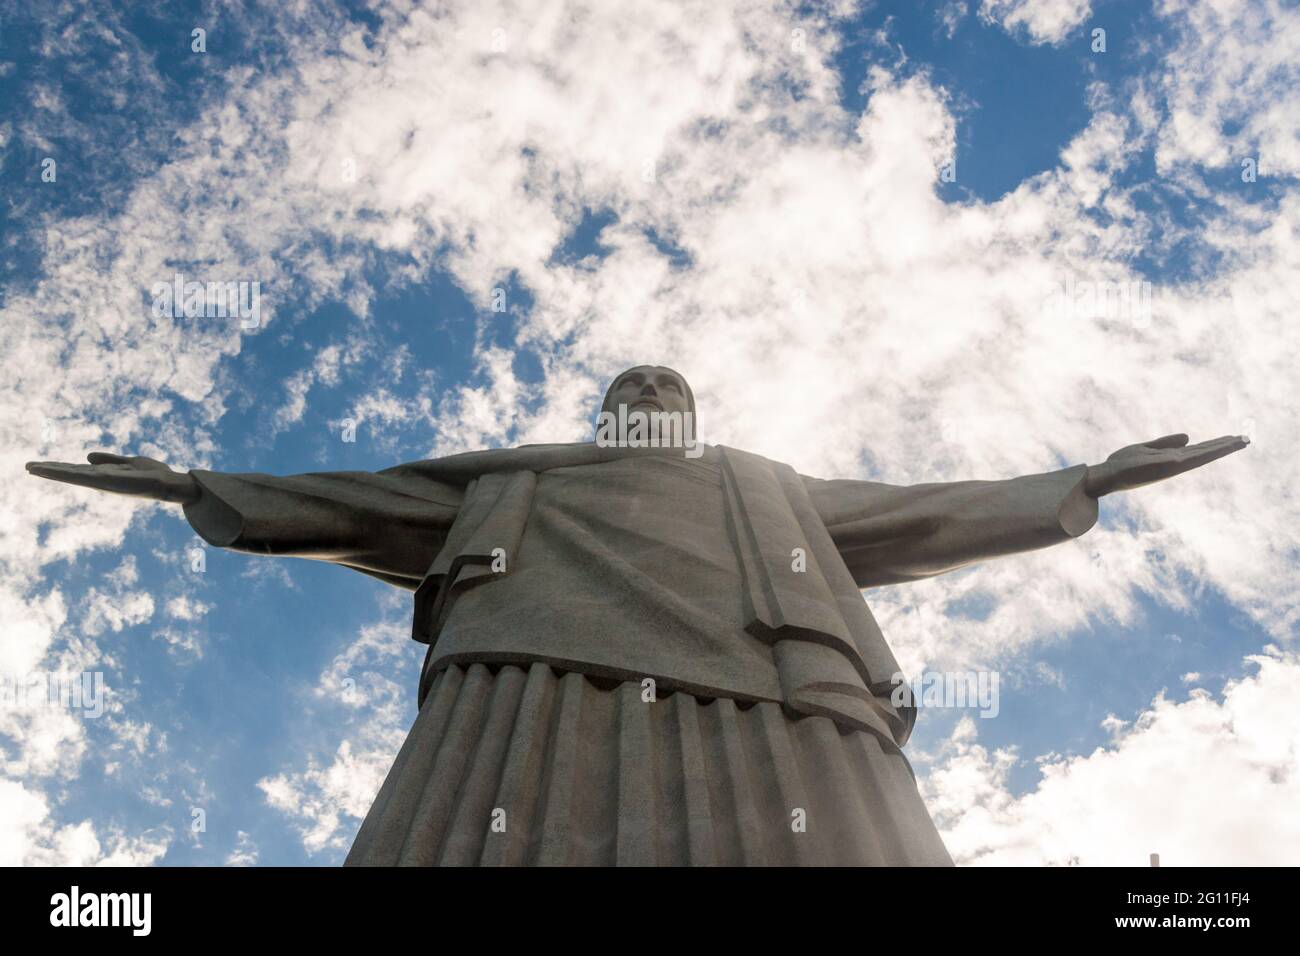 RIO DE JANEIRO, BRAZIL - JAN 28, 2015: Christ the Reedemer statue, Corcovado, Rio de Janeiro, Brazil Stock Photo